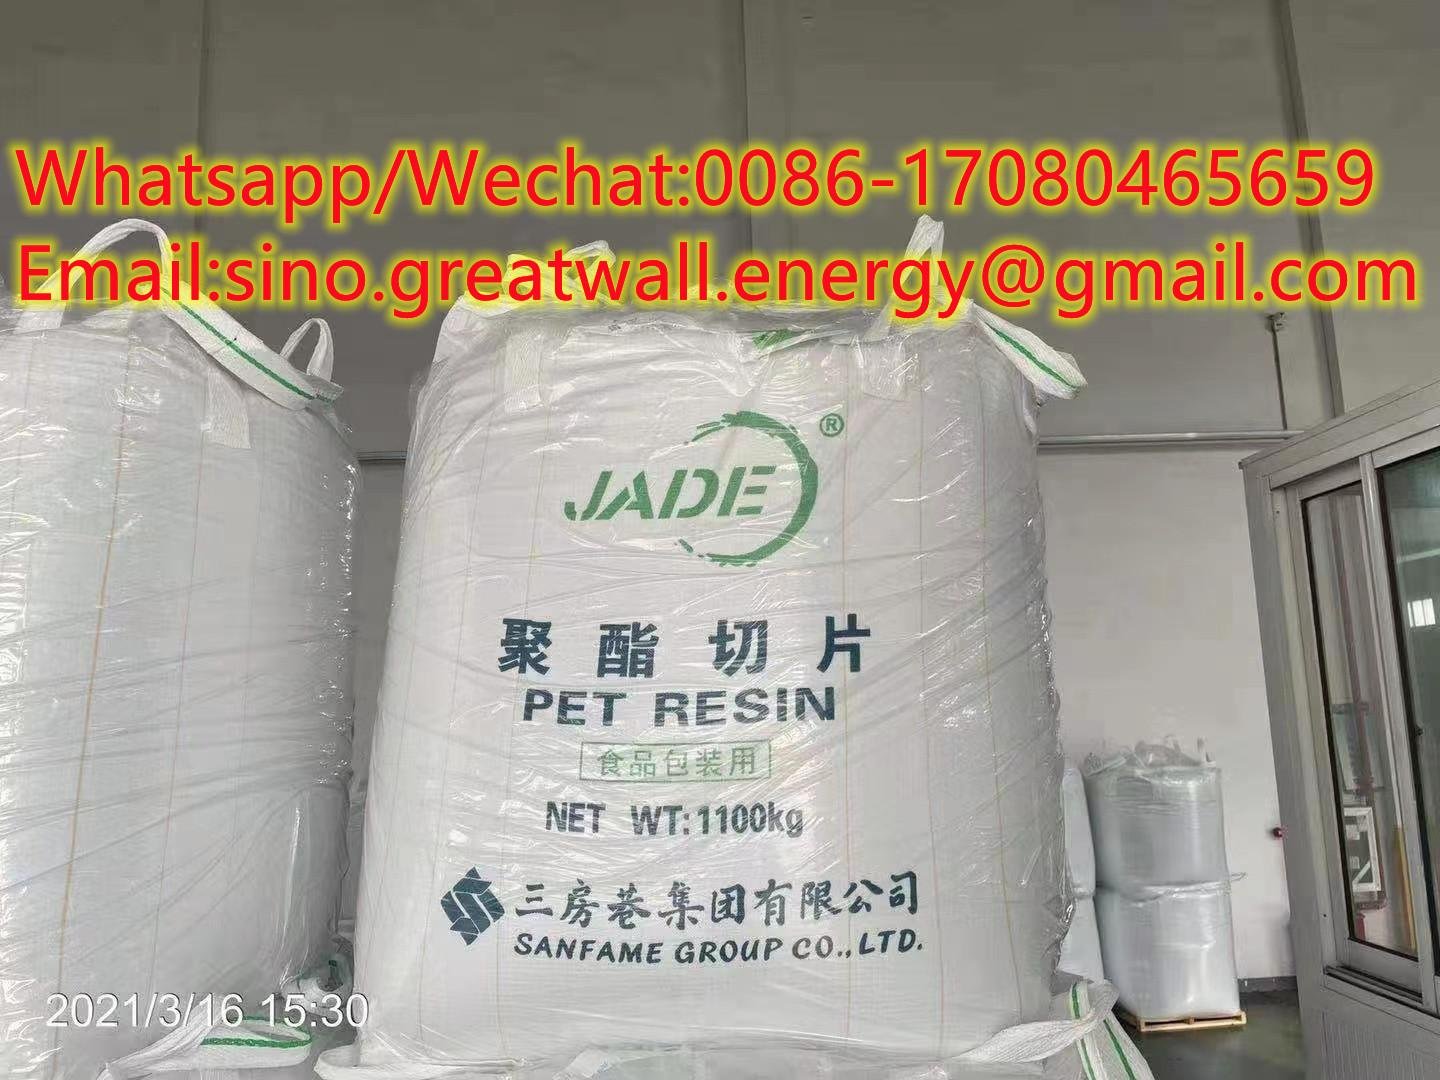 JADE Brand PET Resin/CZ-302 PET Polyester Chips/PET(I. V. Value: 0.78-0.87)  4